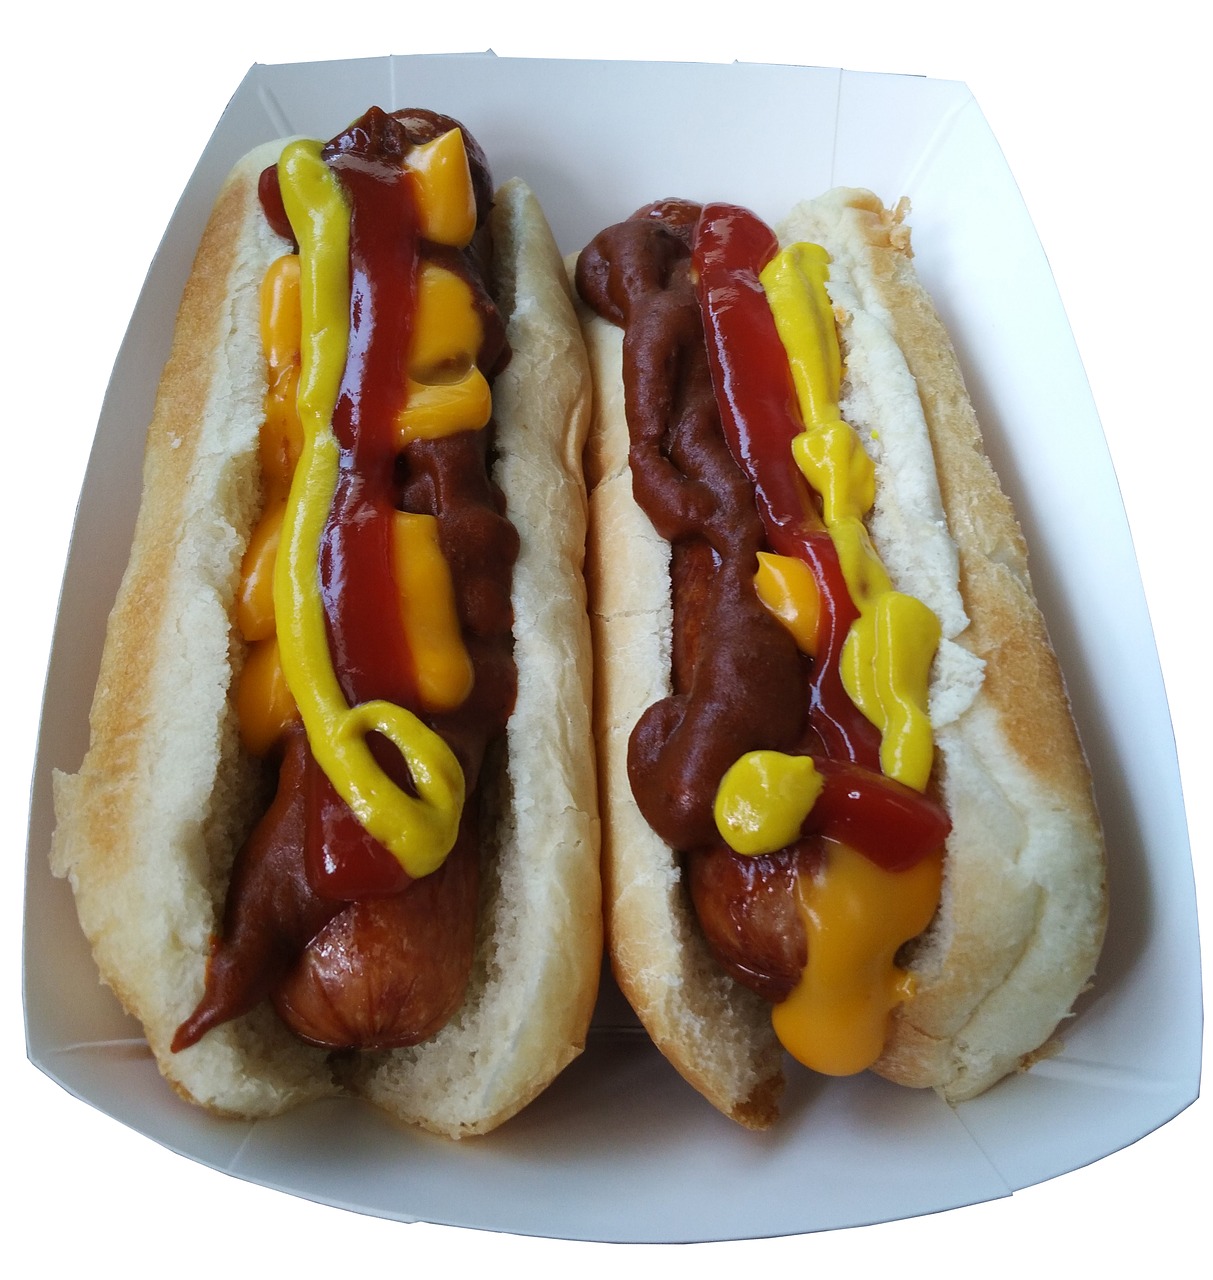 hot dog junk food ob free photo